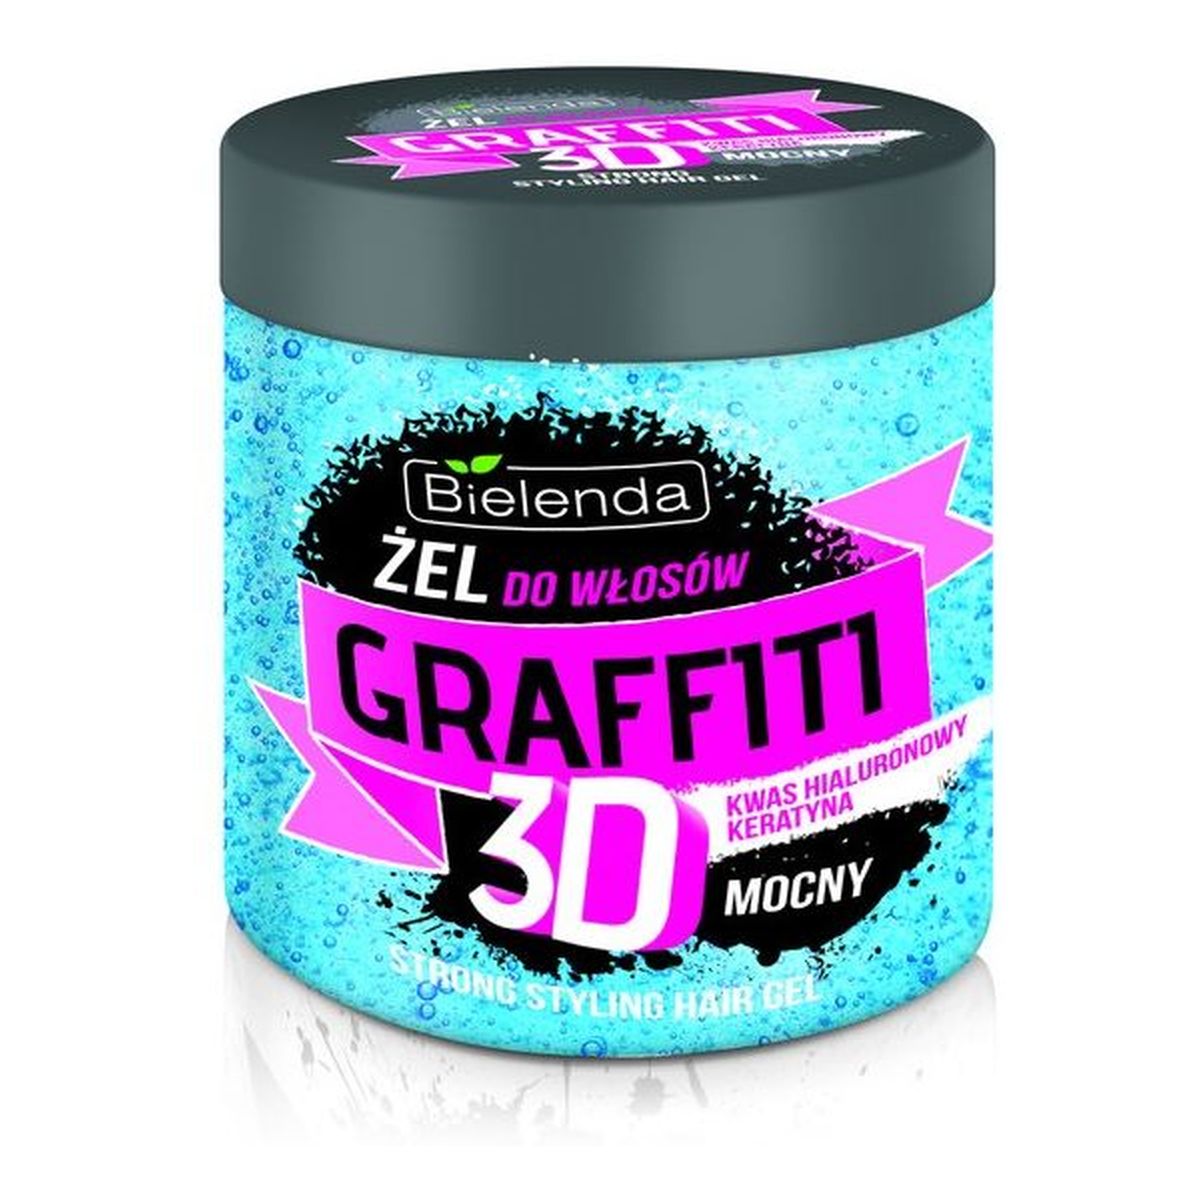 Bielenda 3D Graffiti Żel Do Włosów Mocny Kwas Hialuronowy i Keratyna 250g